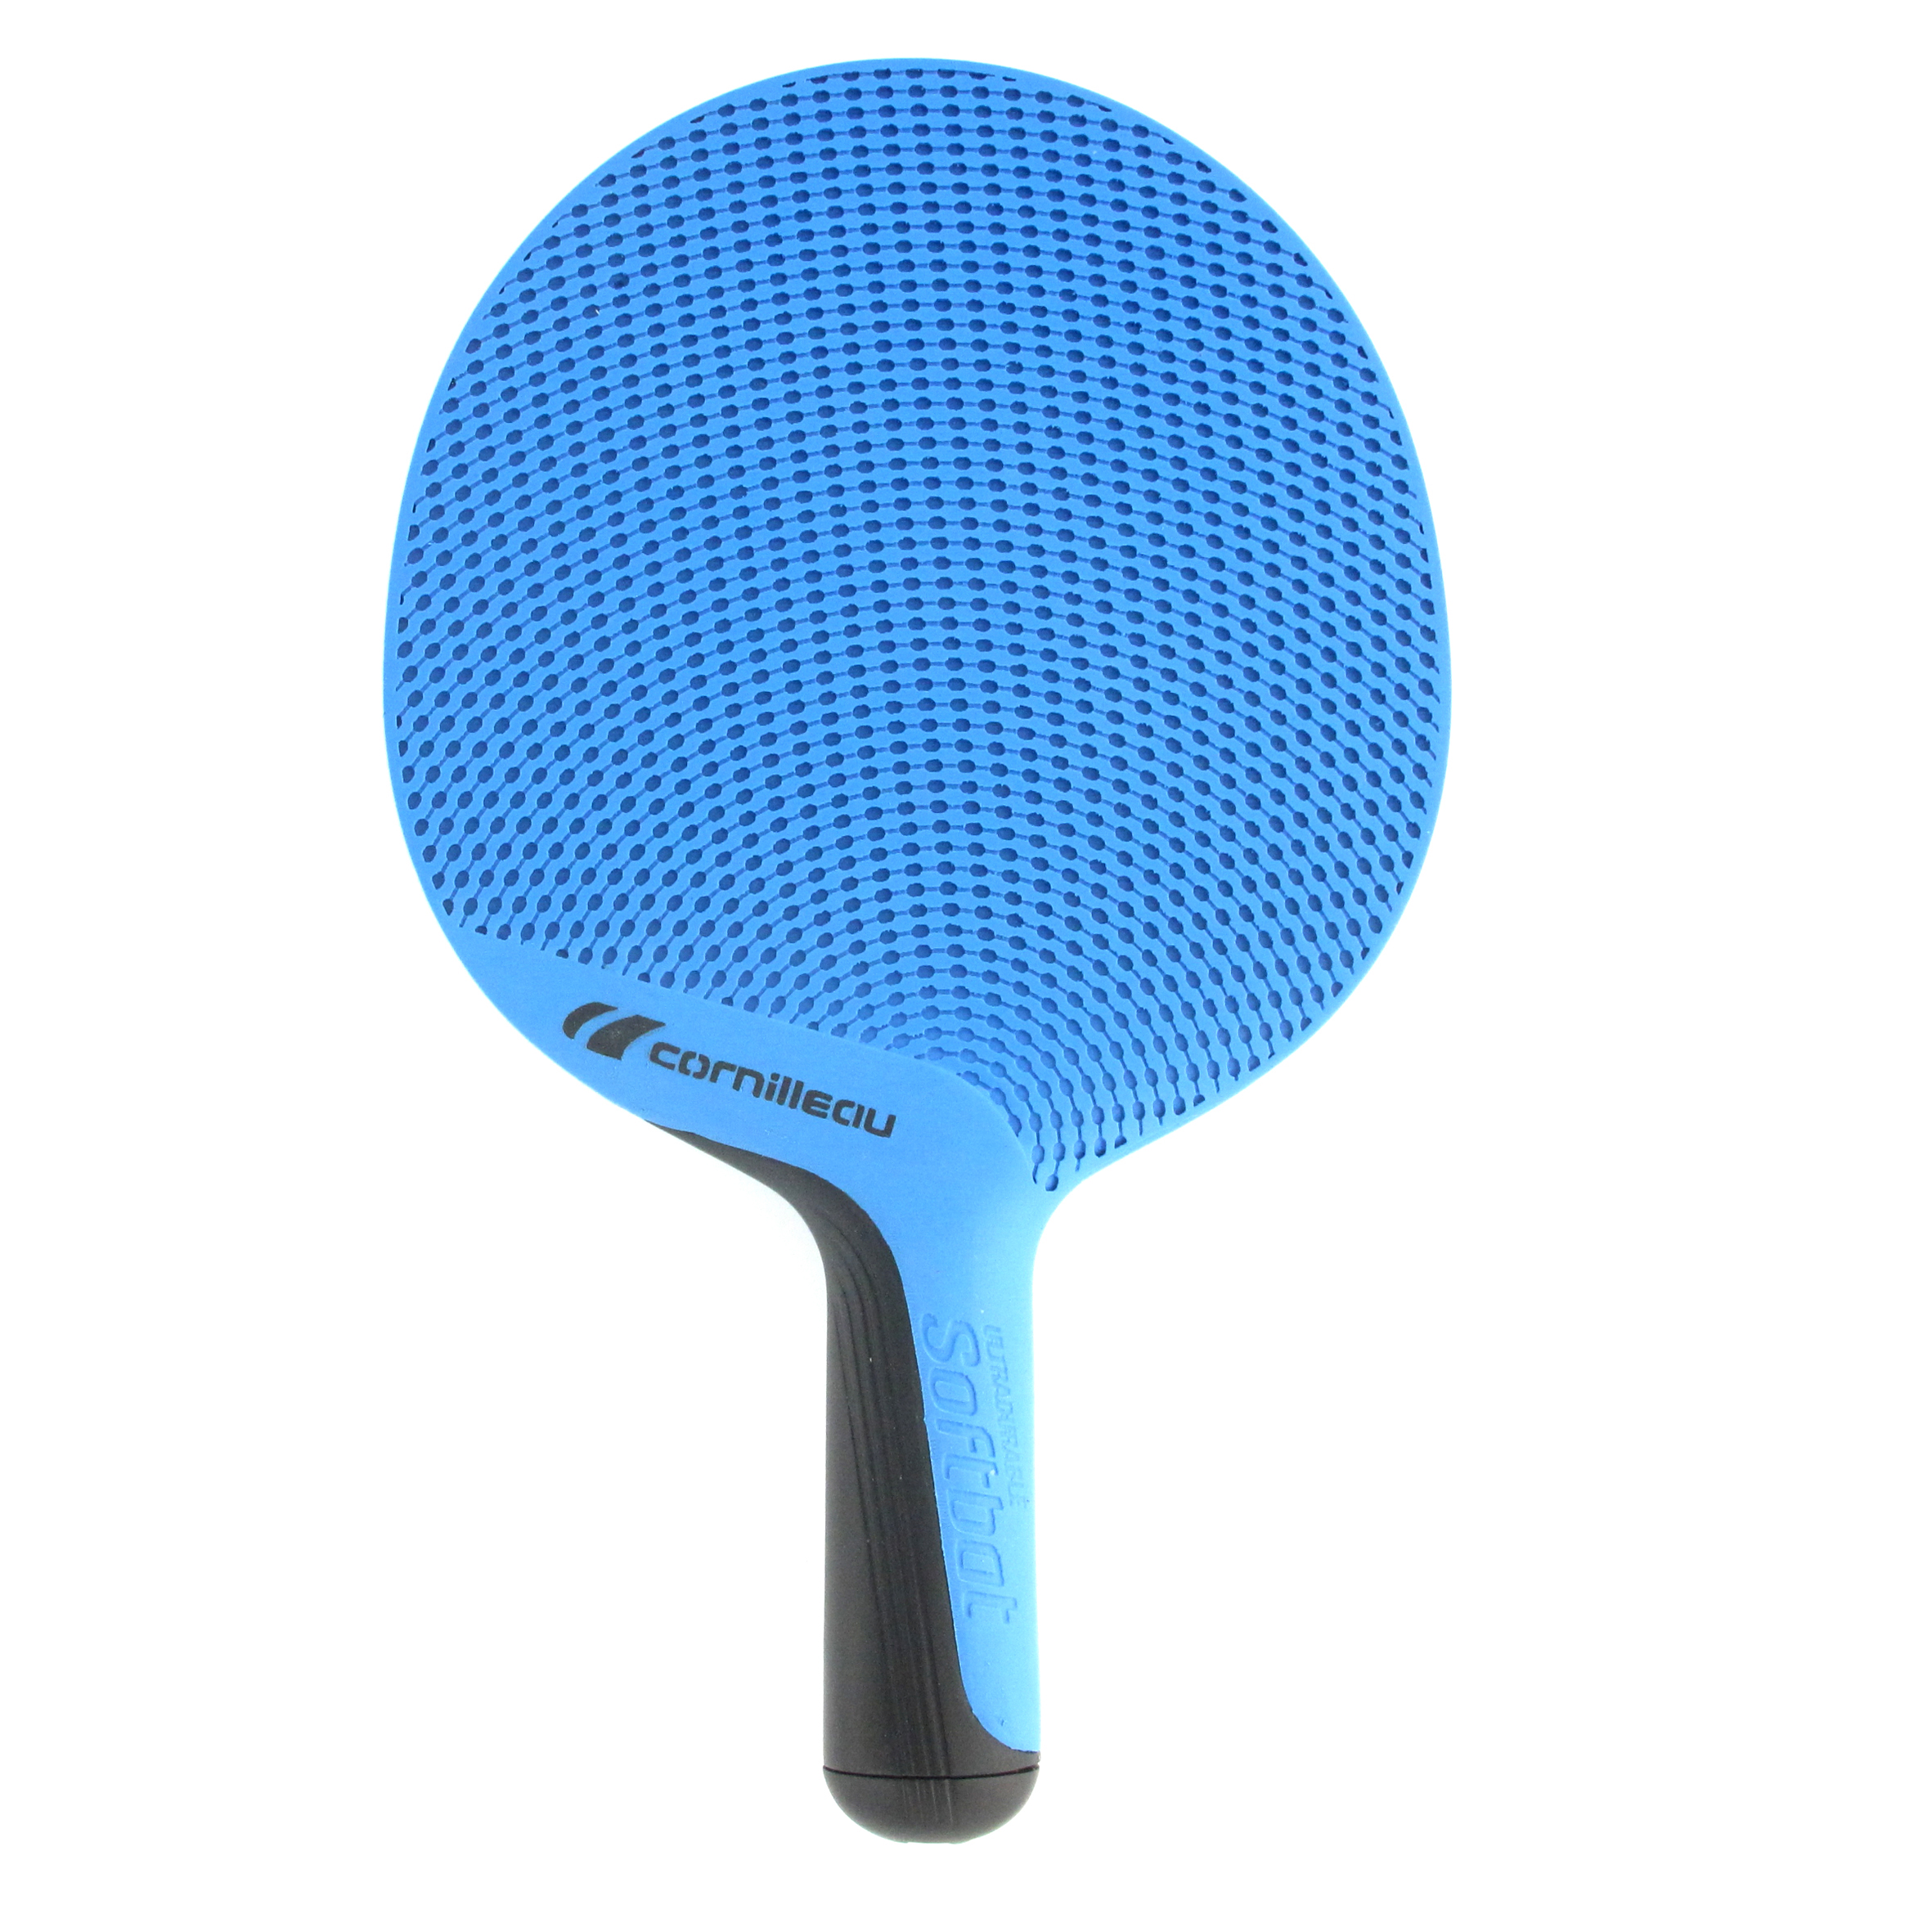 Ракетка для настольного тенниса Cornilleau Softbat, прямая ручка, синяя